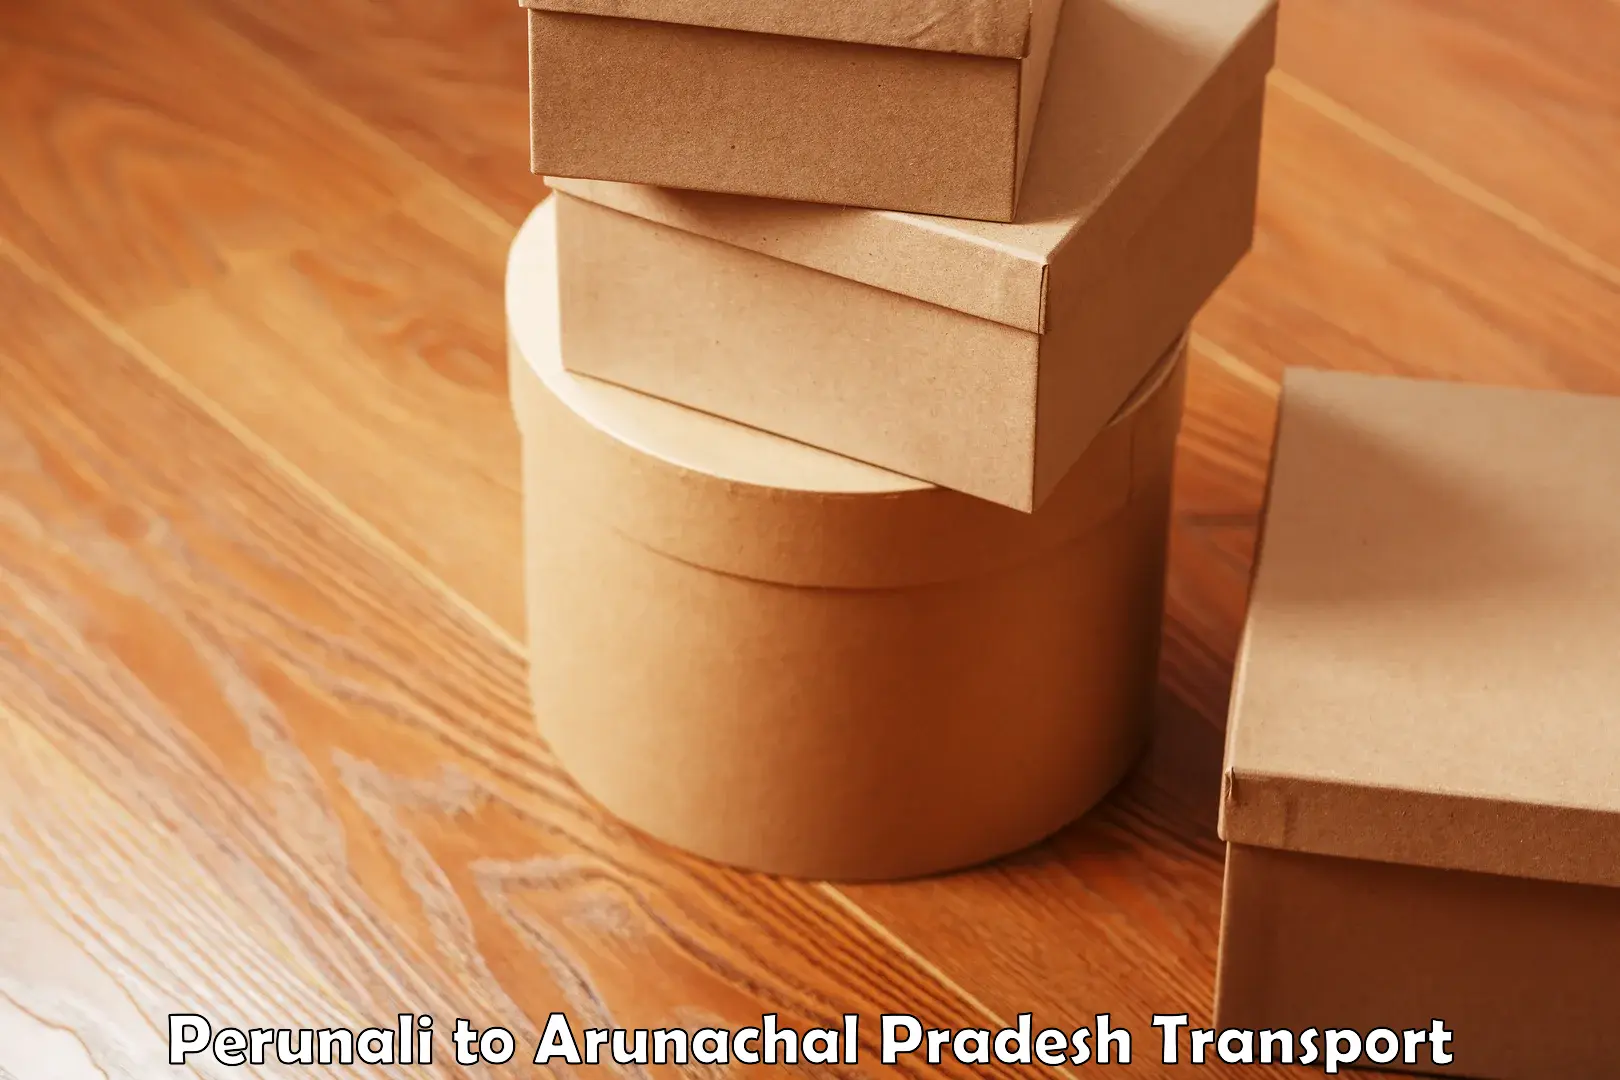 Parcel transport services Perunali to Arunachal Pradesh